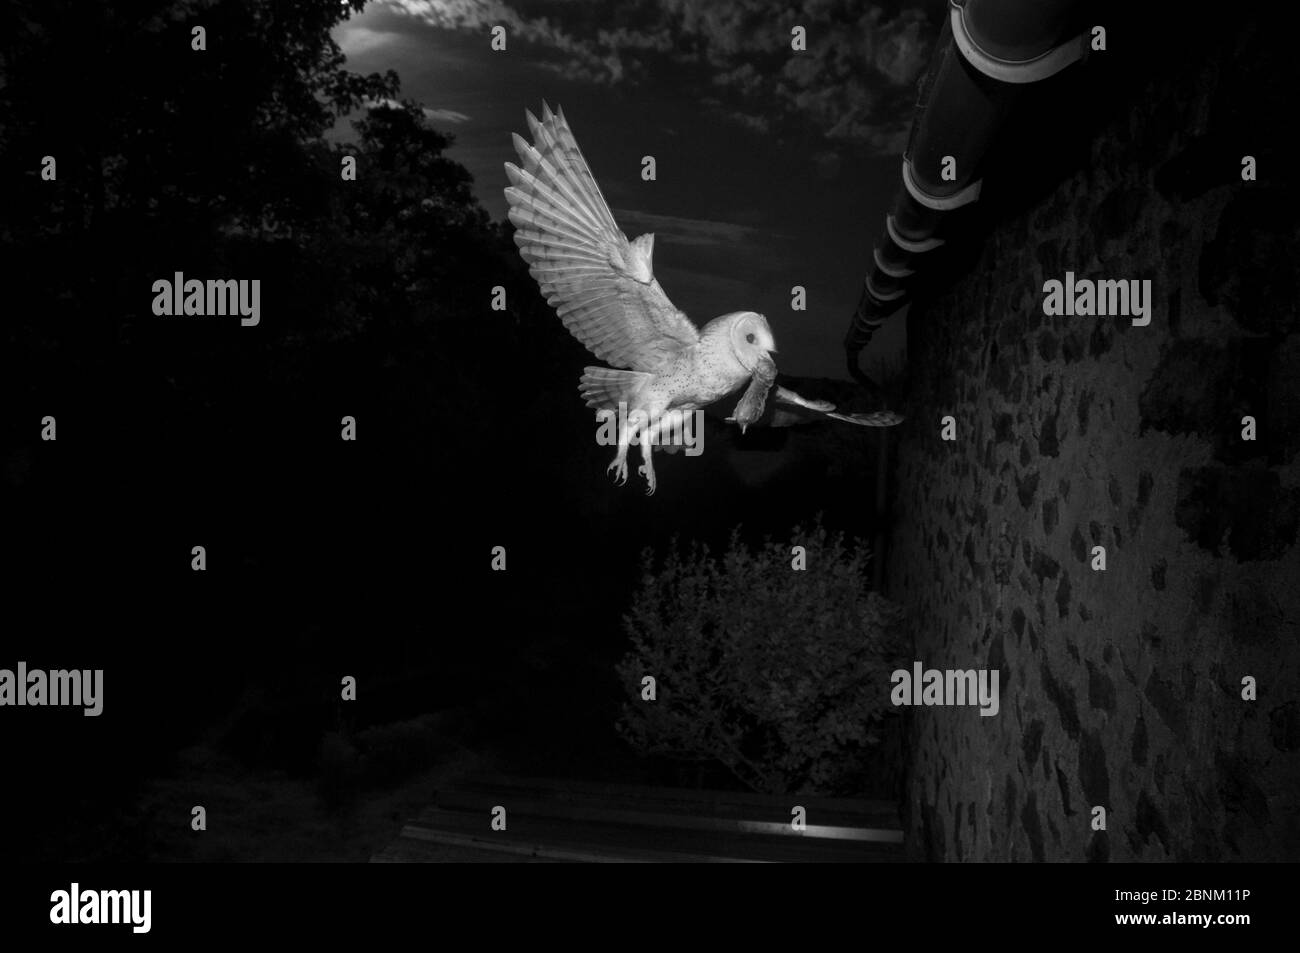 La chouette de la grange (Tyto alba) qui vole pour nicher dans les avant-bouées avec des proies, prise avec lumière infrarouge la nuit France, janvier. Banque D'Images